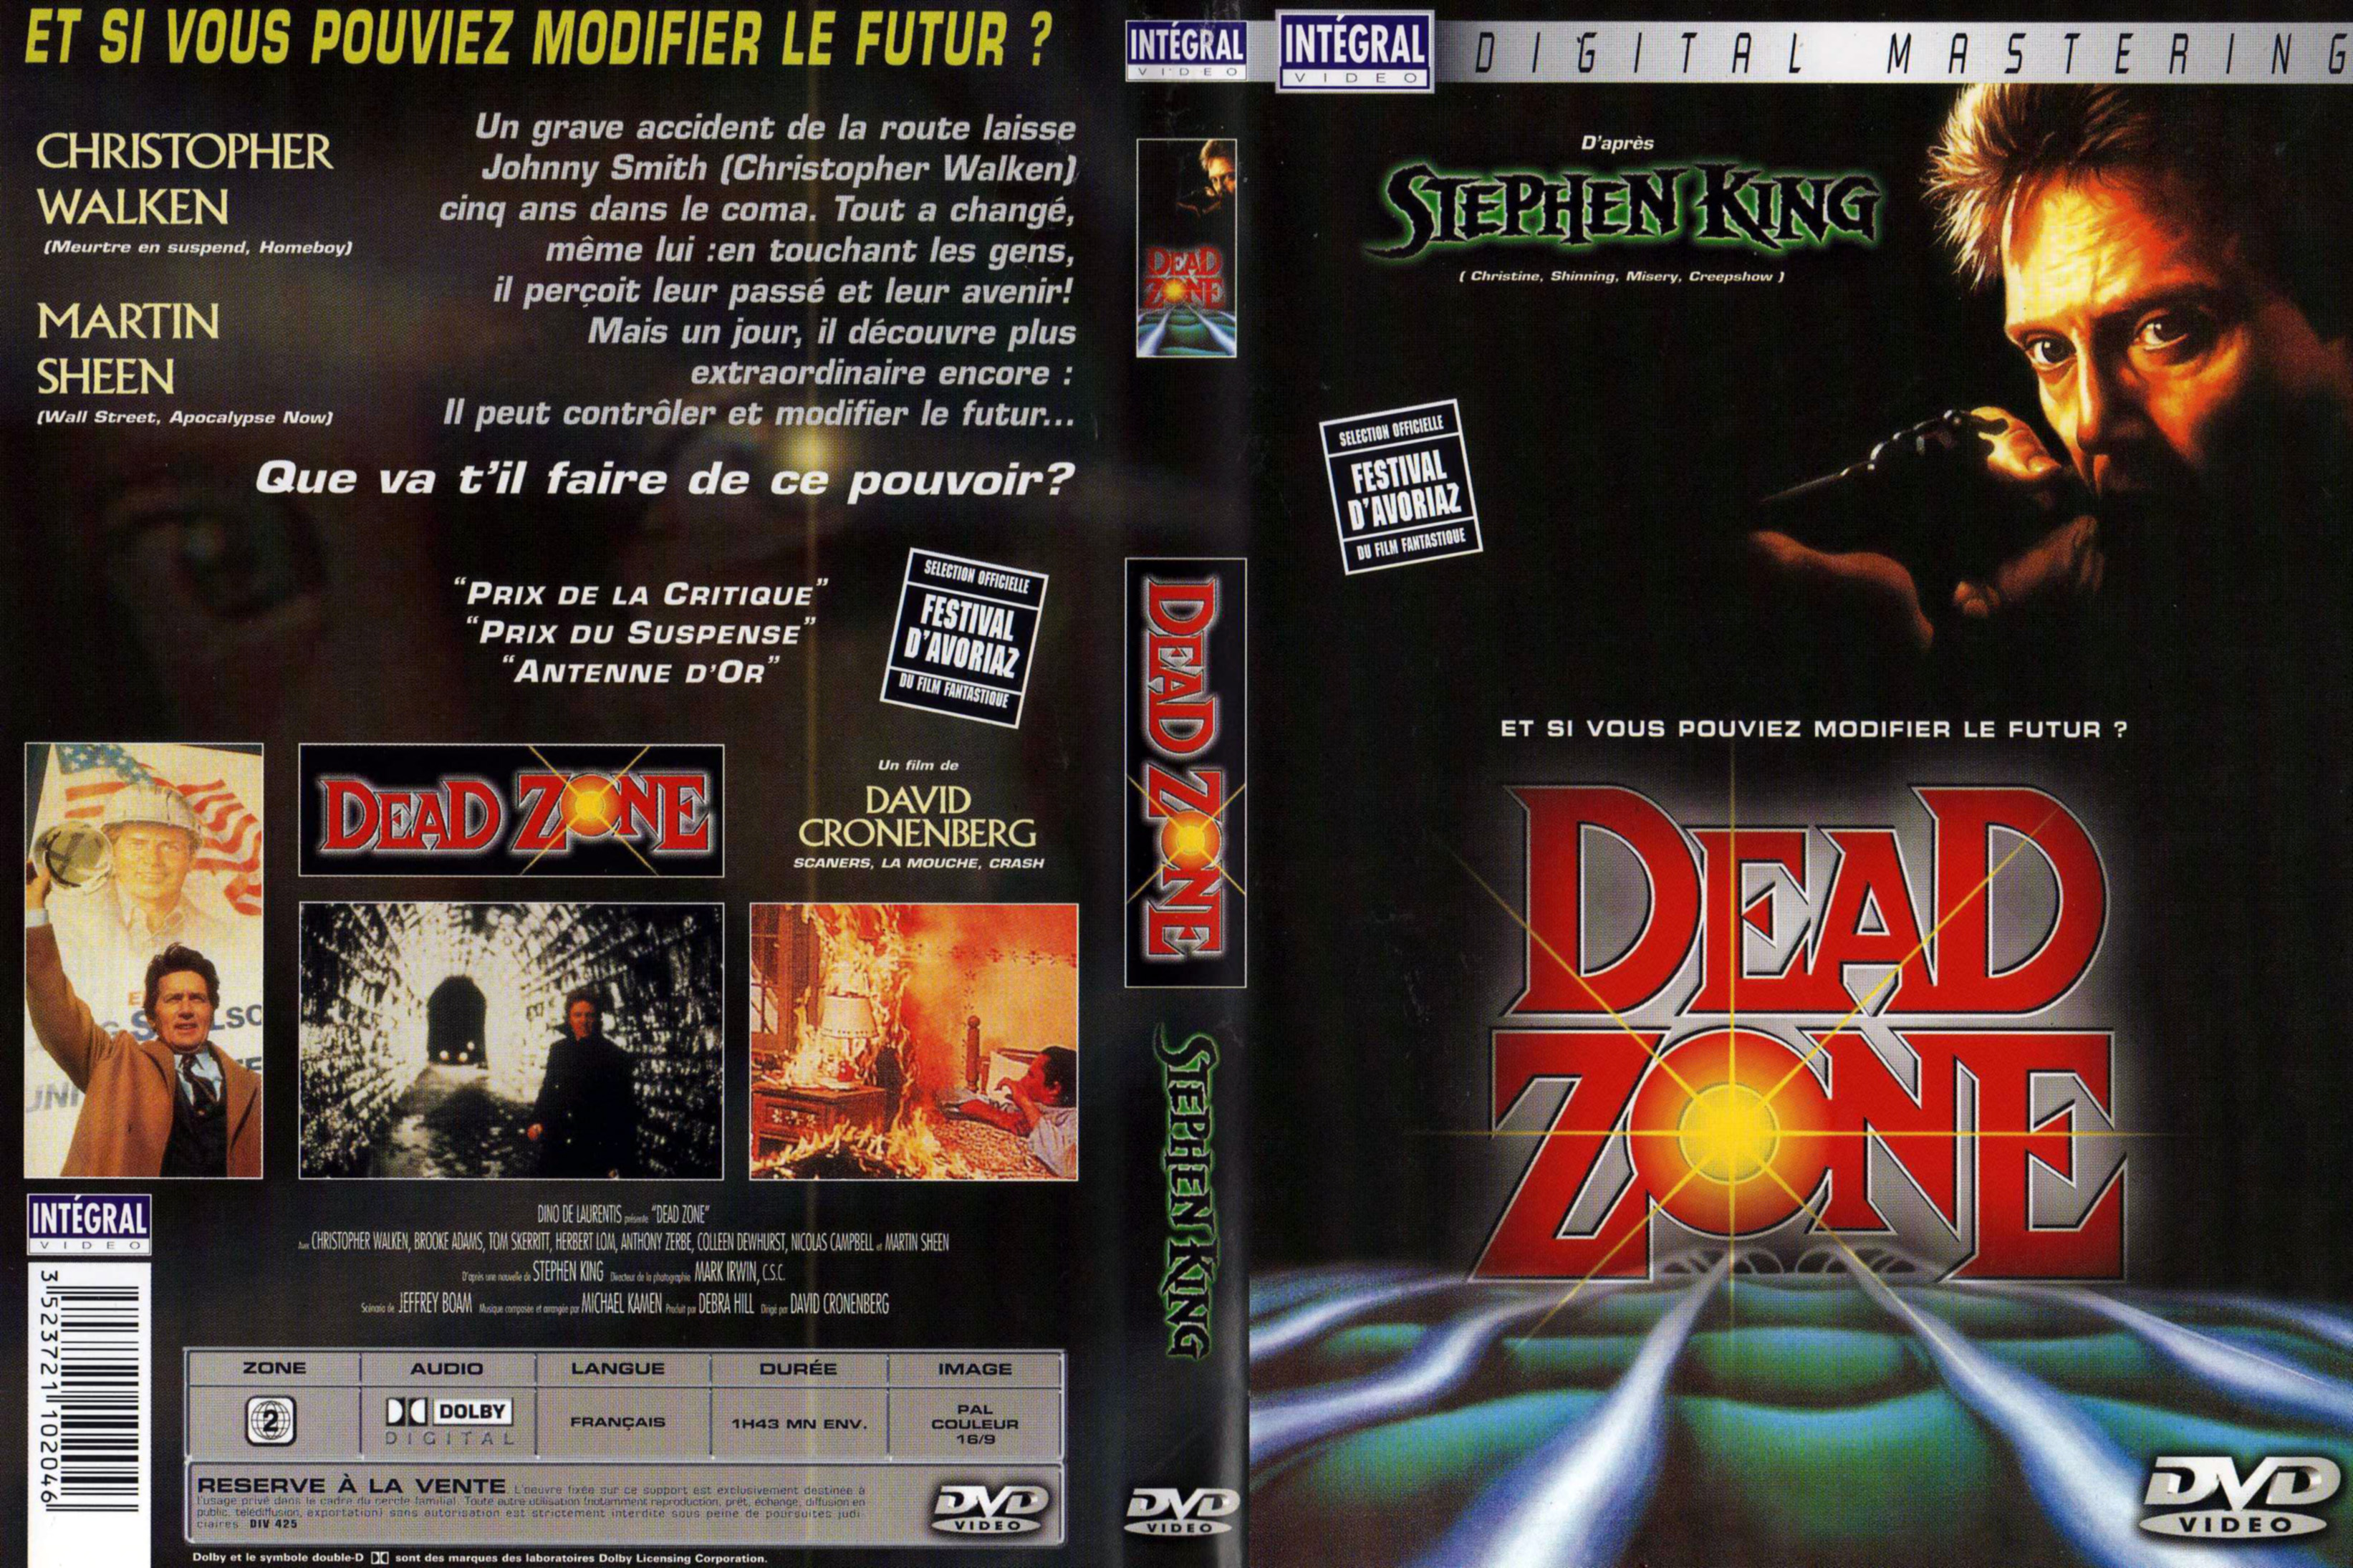 Jaquette DVD Dead zone v2